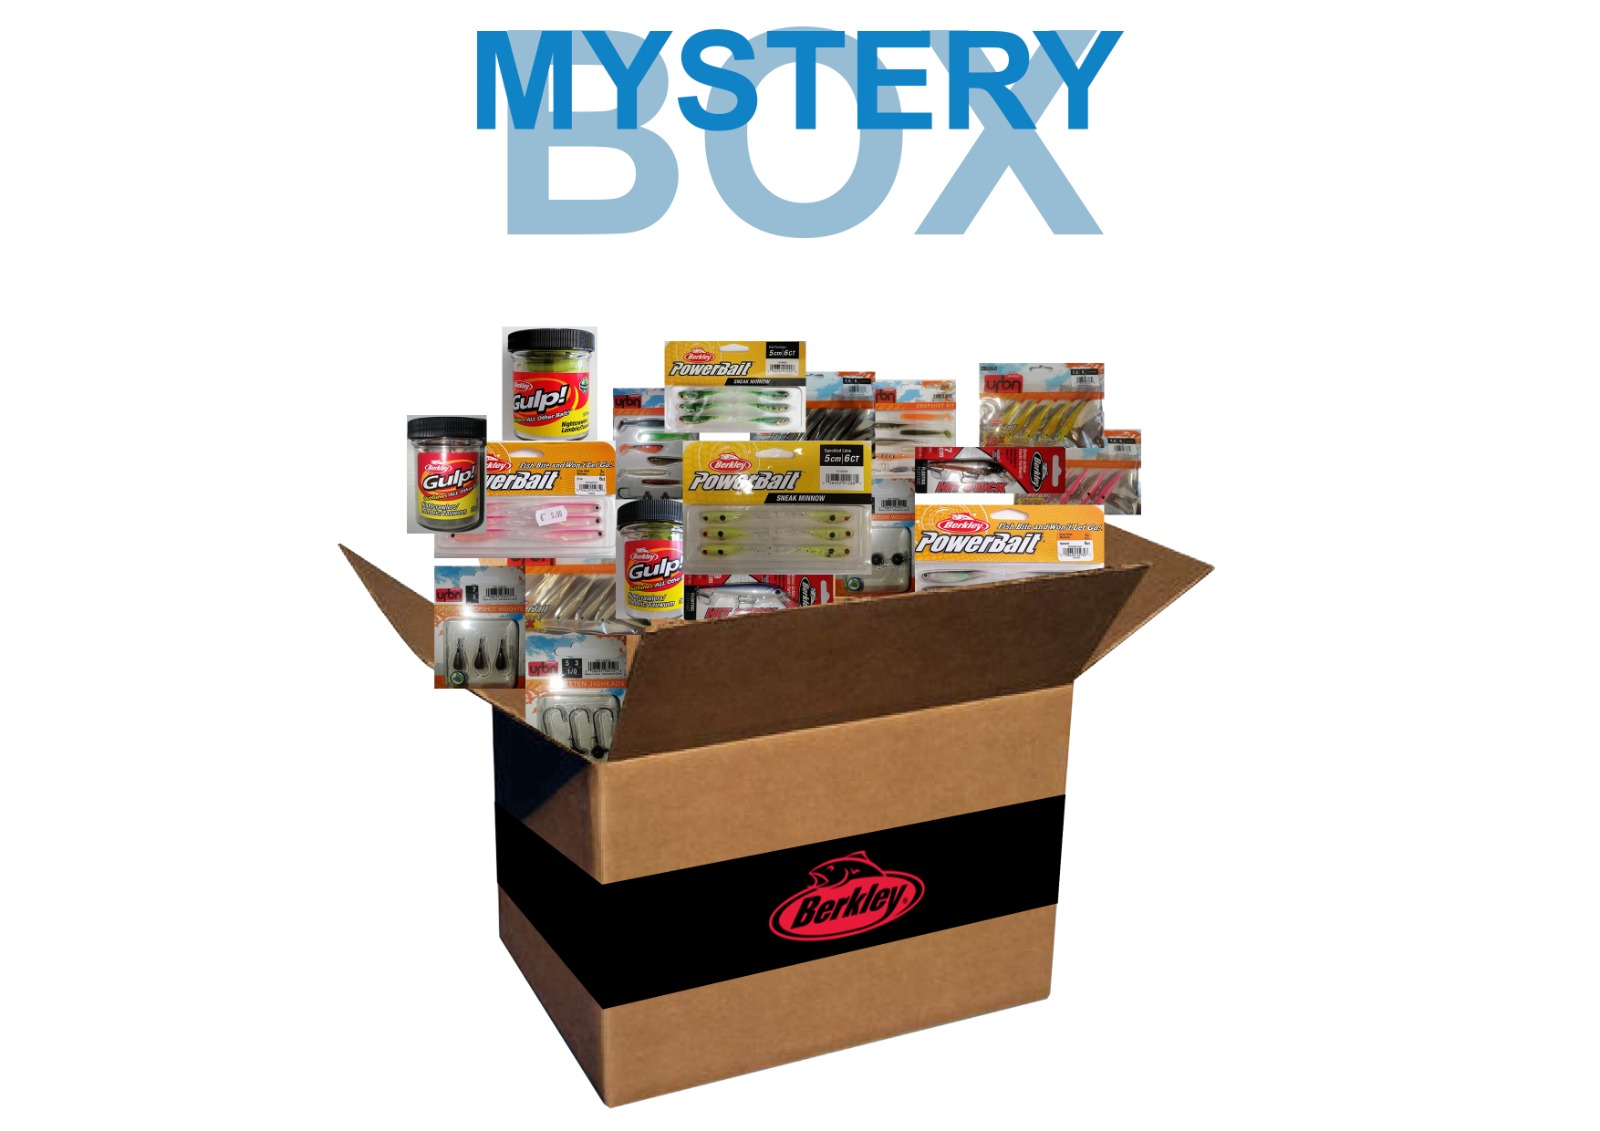 Mistery Box Acciaio - Scatola a sorpresa con 5 gioielli